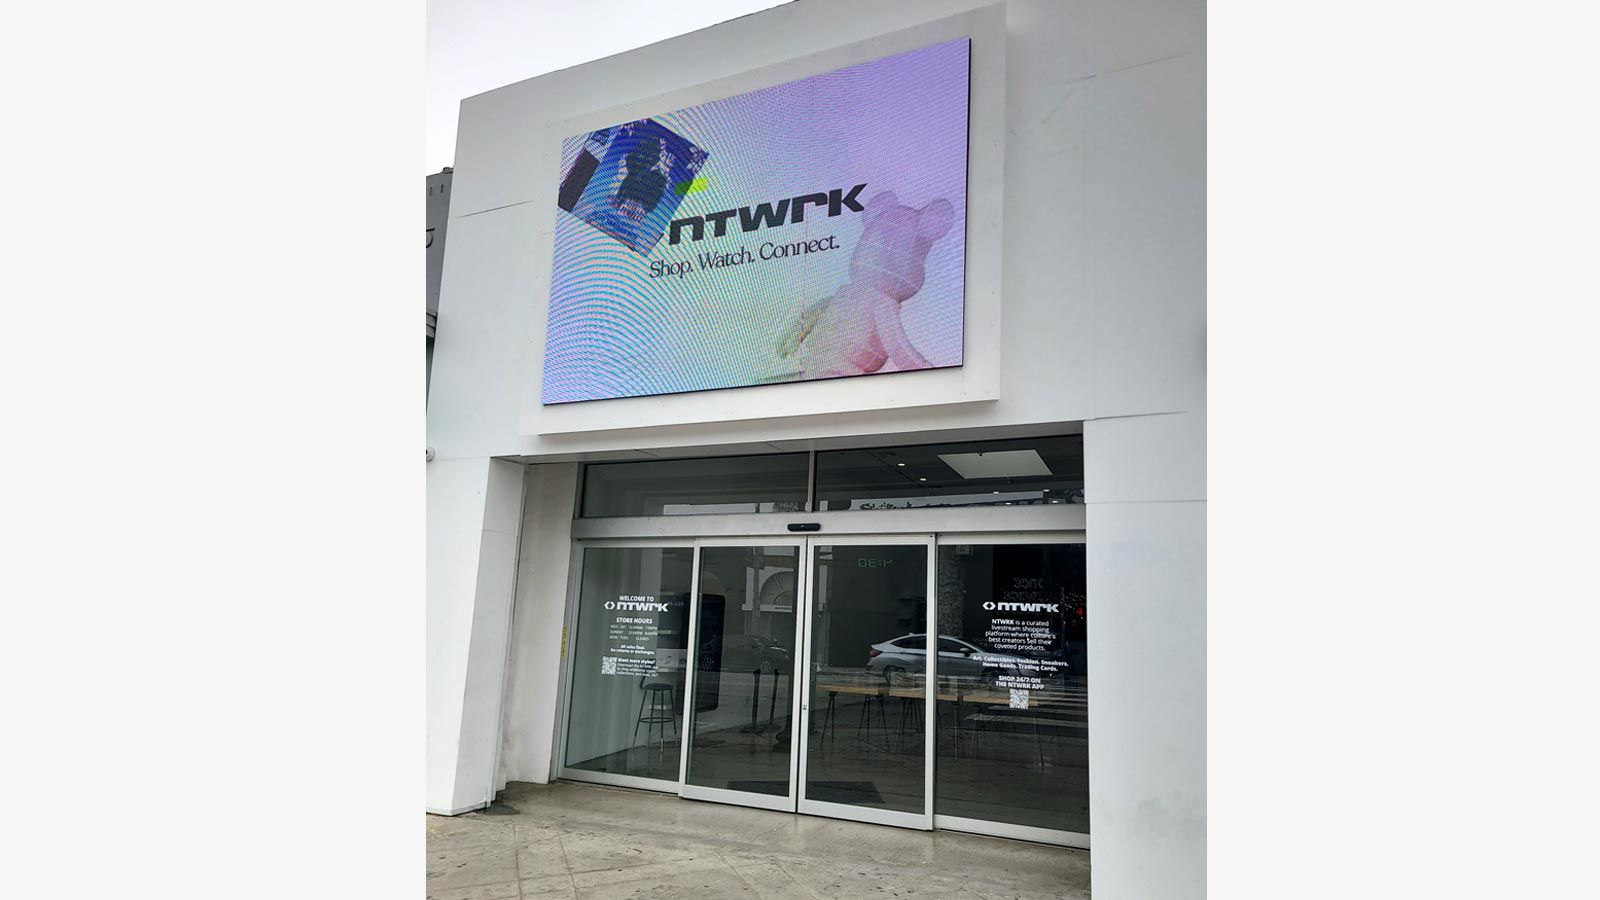 NTWRK vinyl lettering on storefront windows